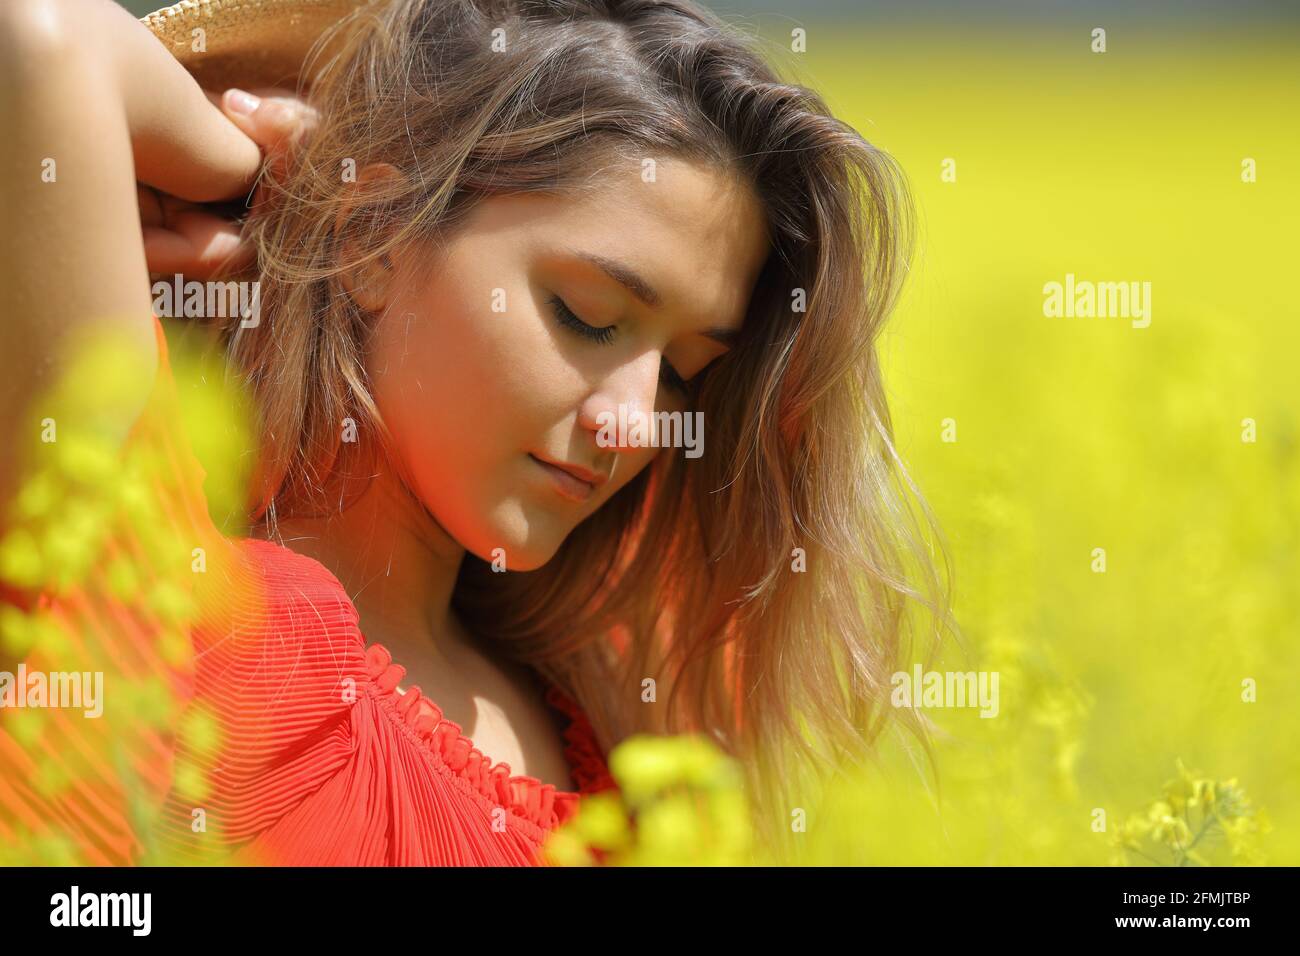 Ritratto di una donna di bellezza in rosso che posa in una campo fiorito giallo Foto Stock